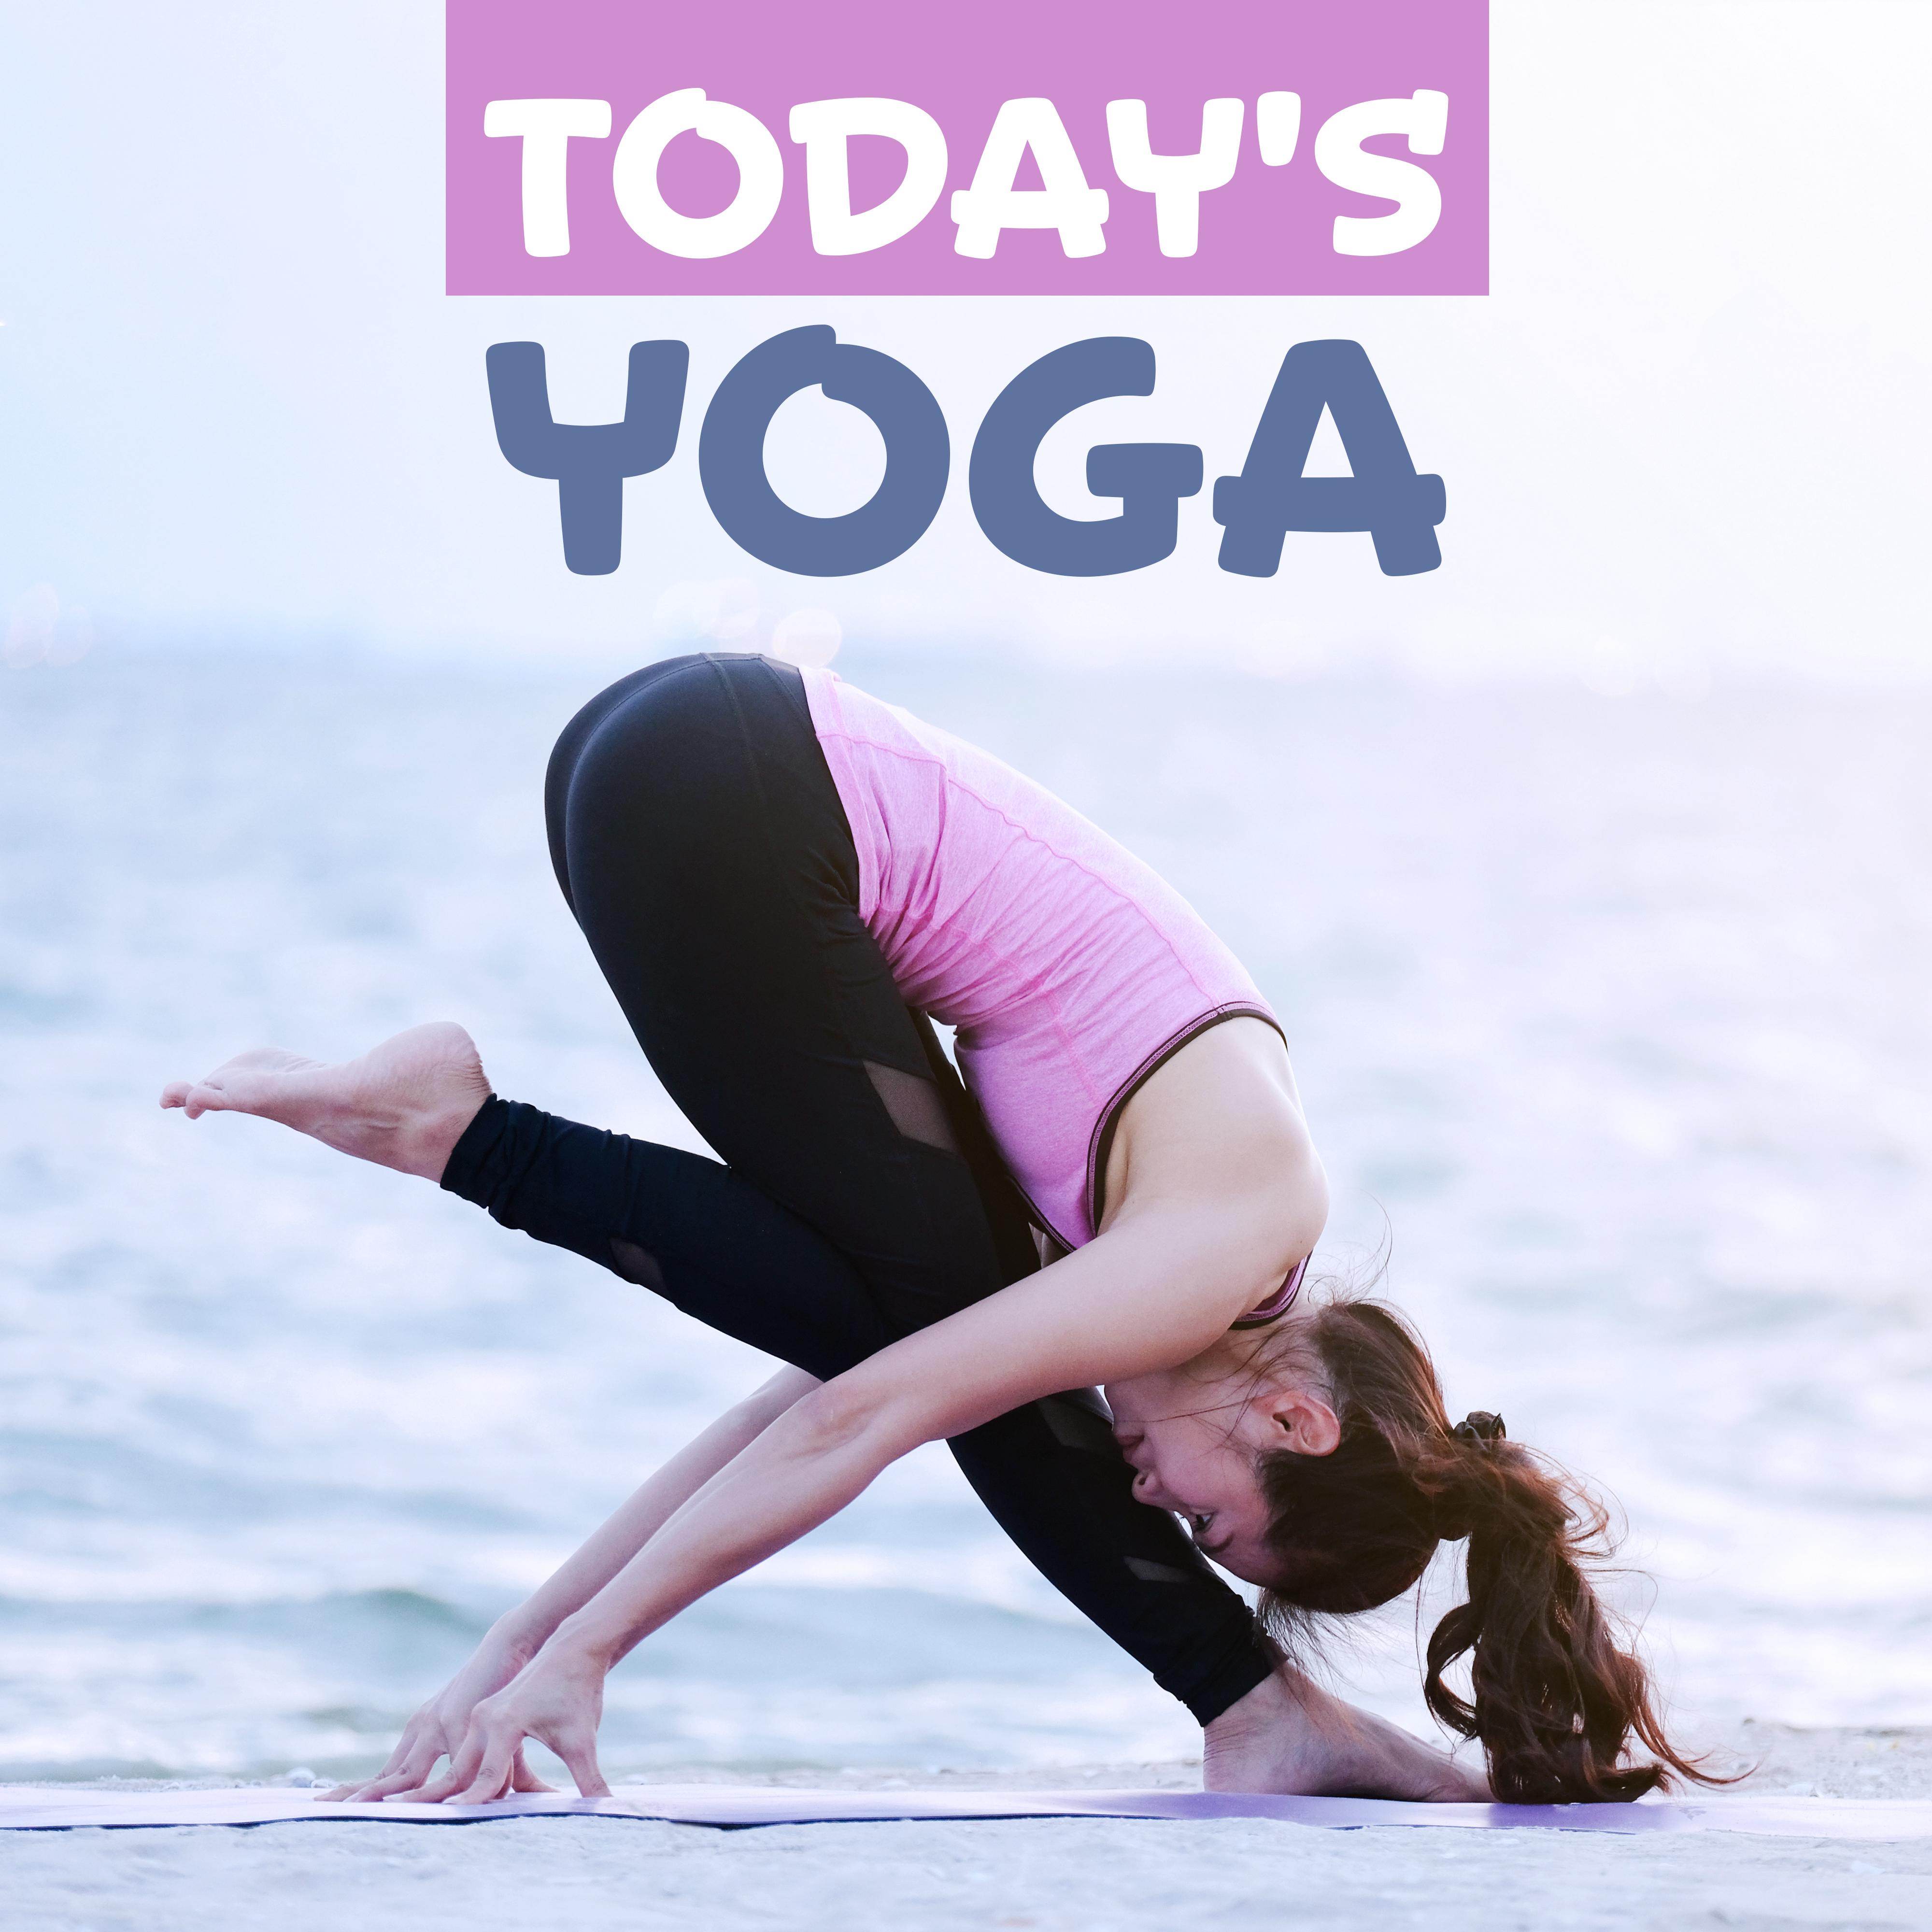 Today's Yoga